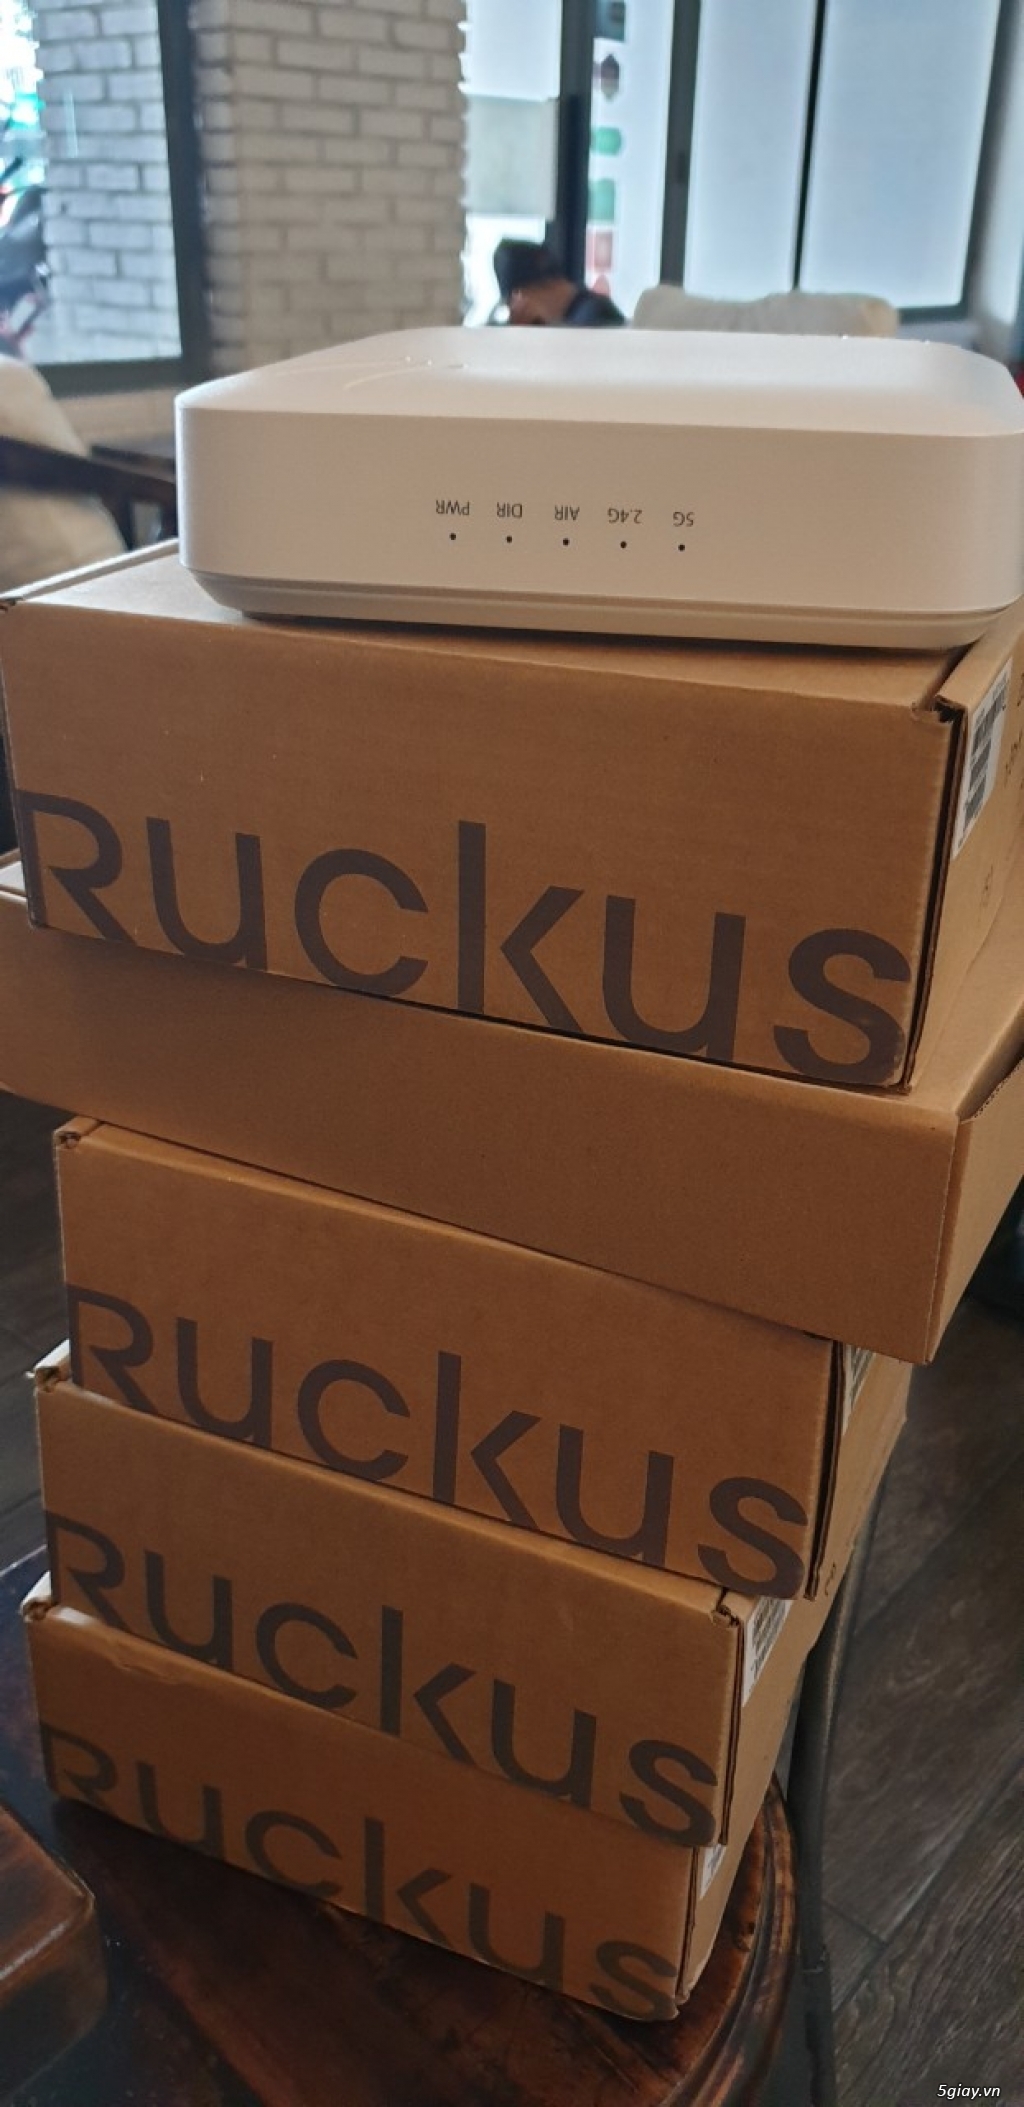 Ruckus R700 Dual Band 802.11ac wifi cao cấp chuẩn AC - Liên hệ giá tốt - 2